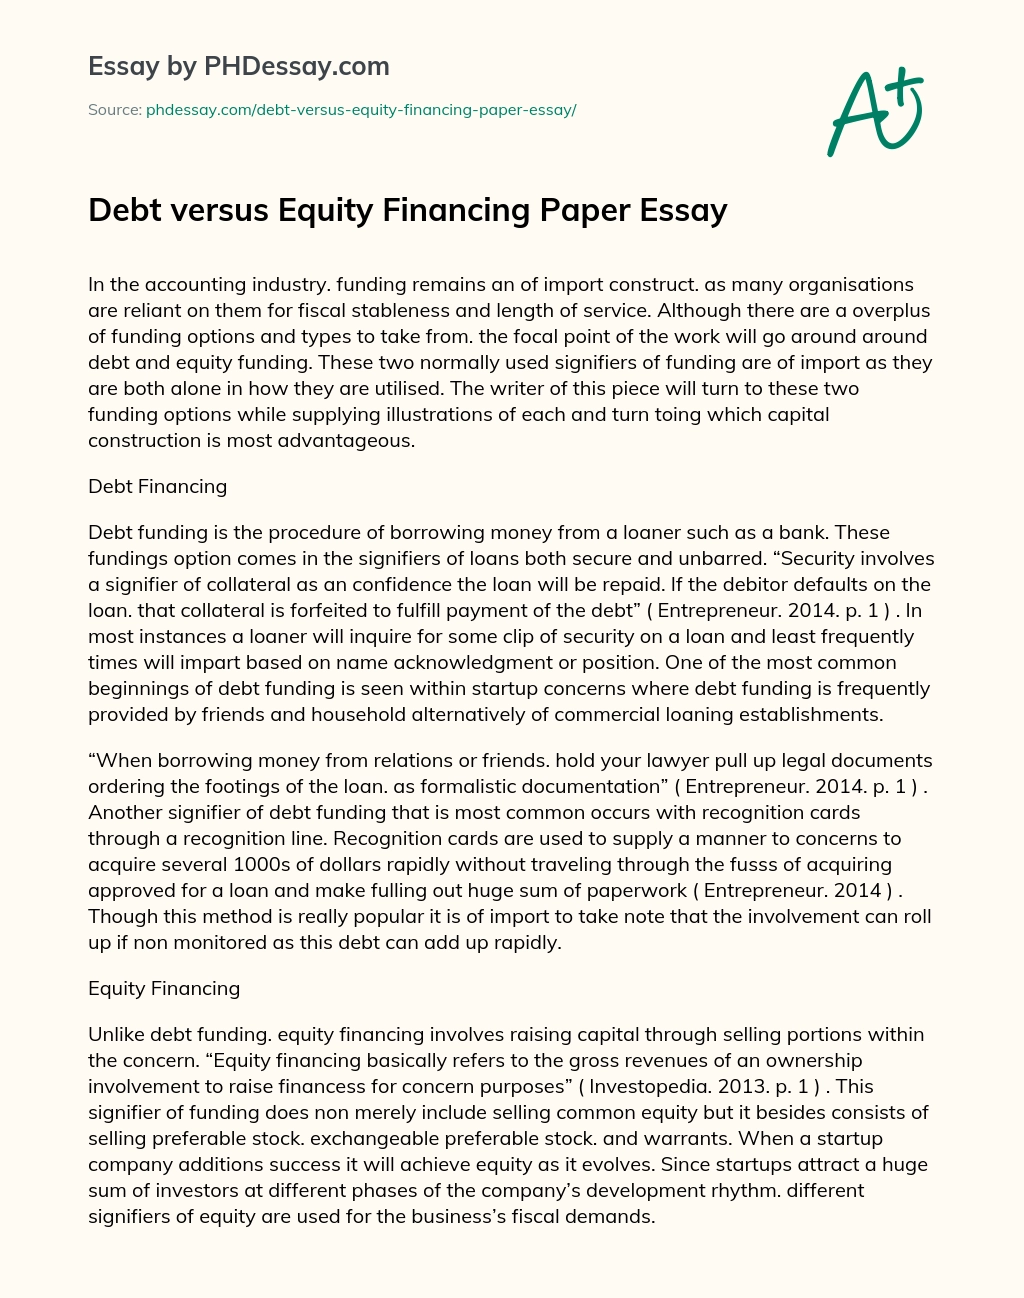 Debt versus Equity Financing Paper Essay essay